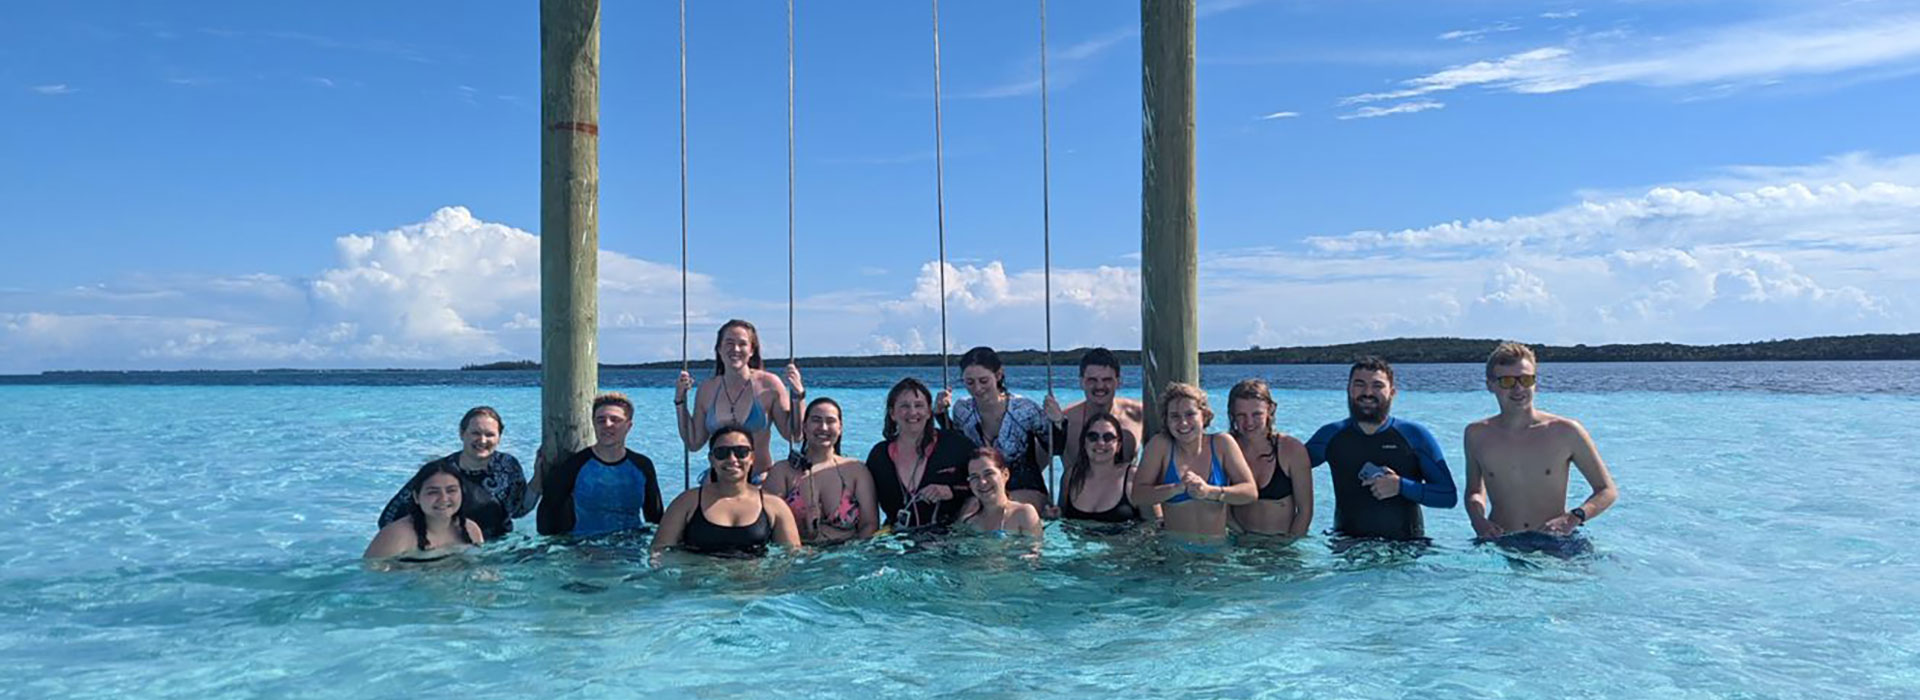 Students pose at the Stingray sandbar swings in the Bahamas.